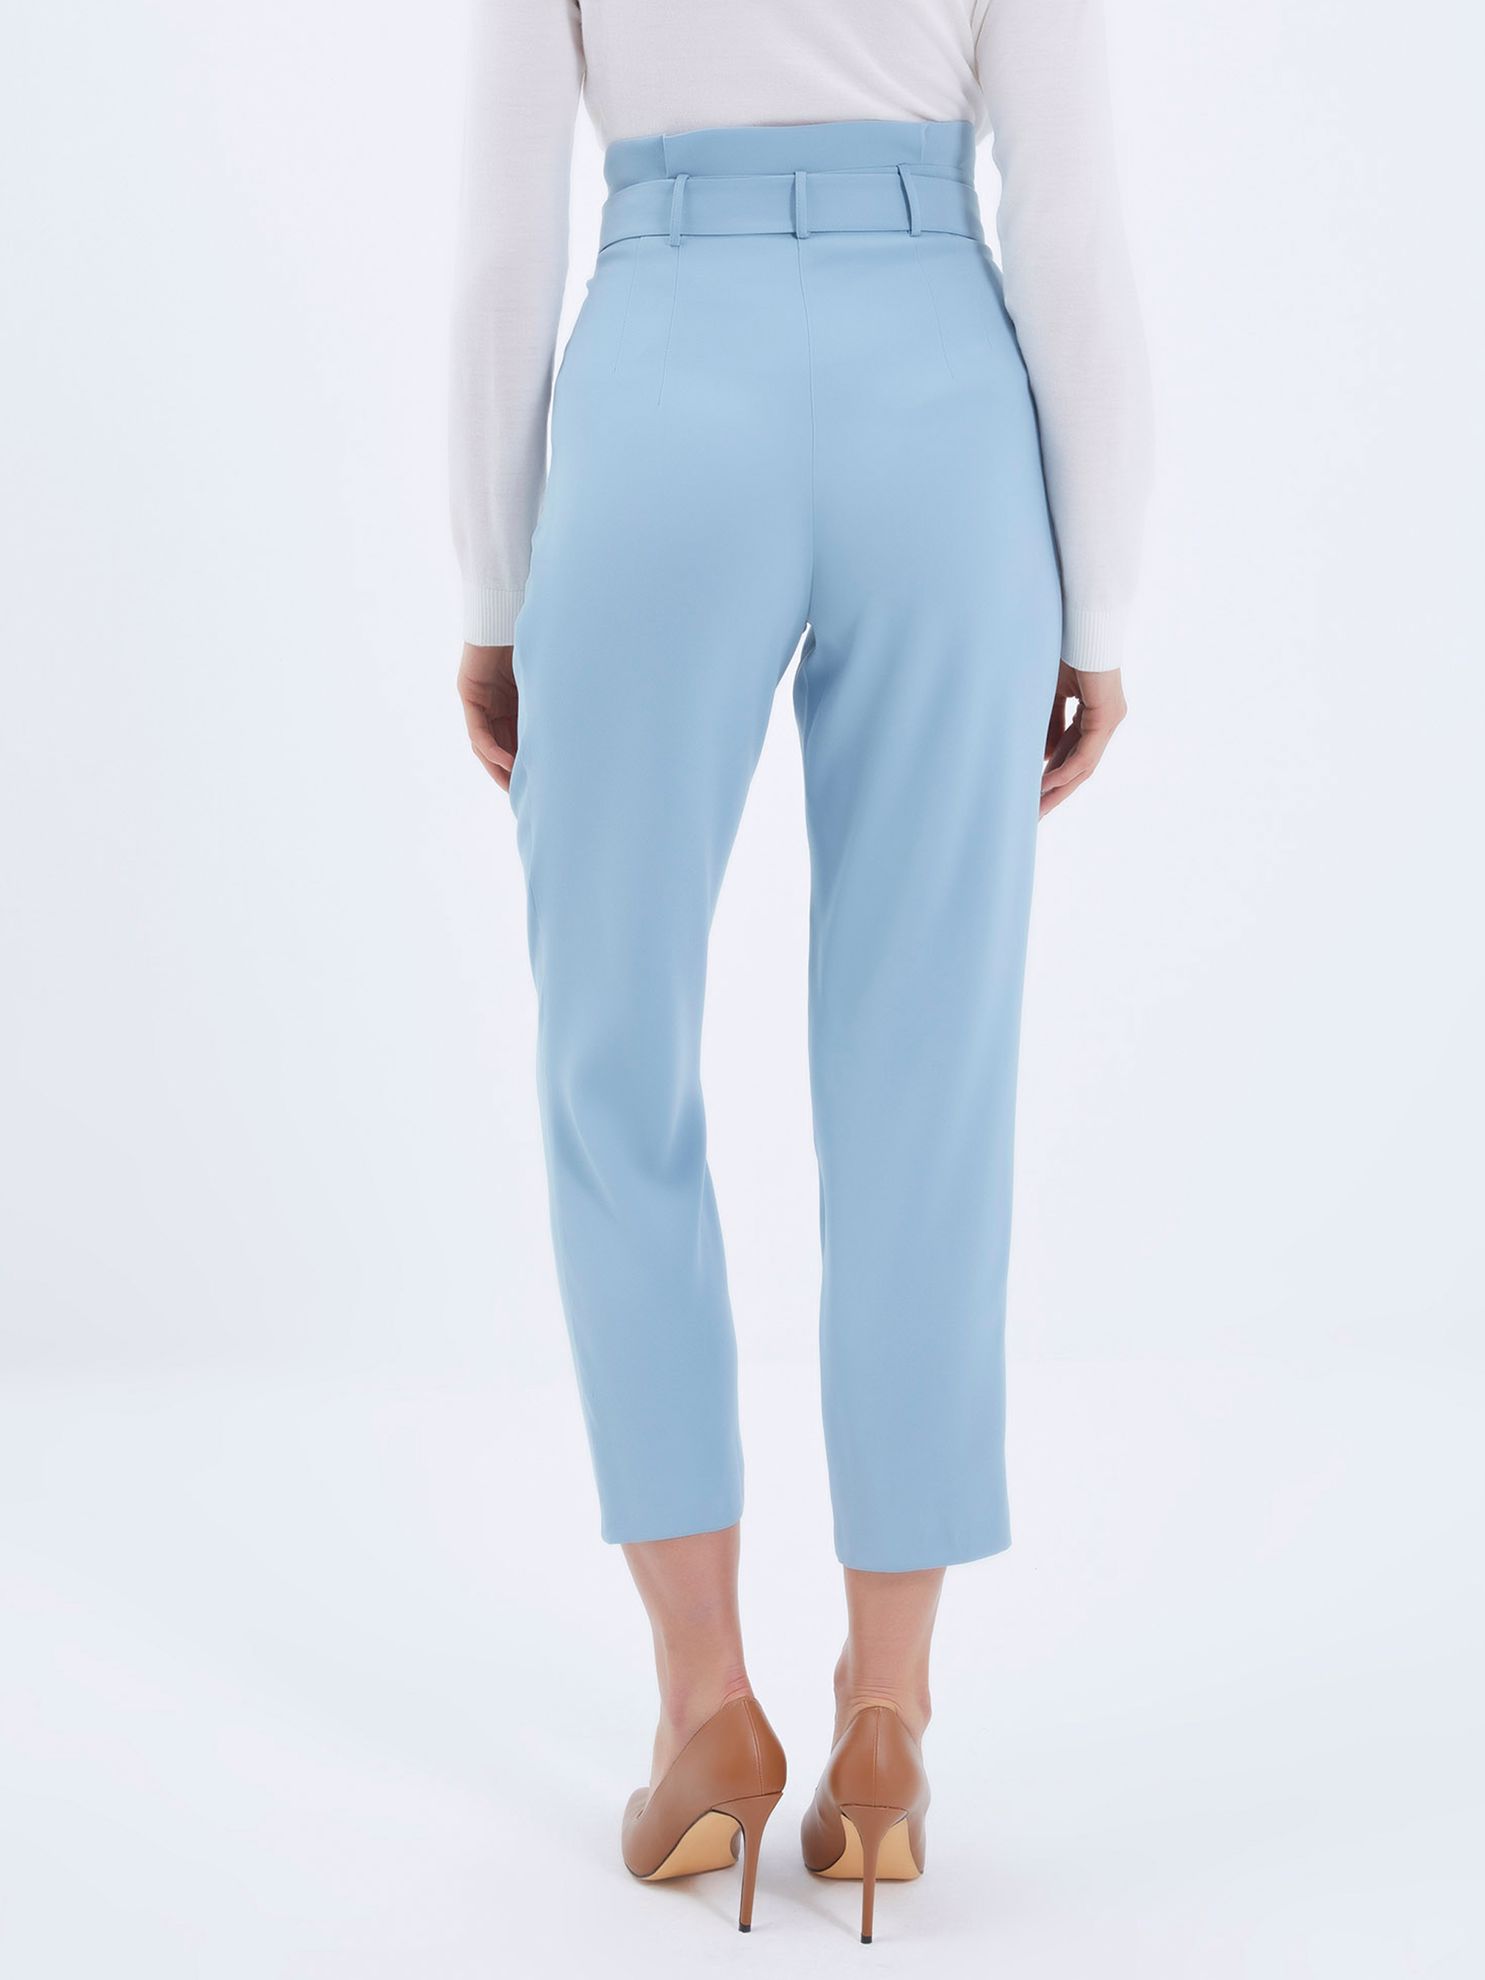 Karaca Kadın Pantolon-Mavi. ürün görseli